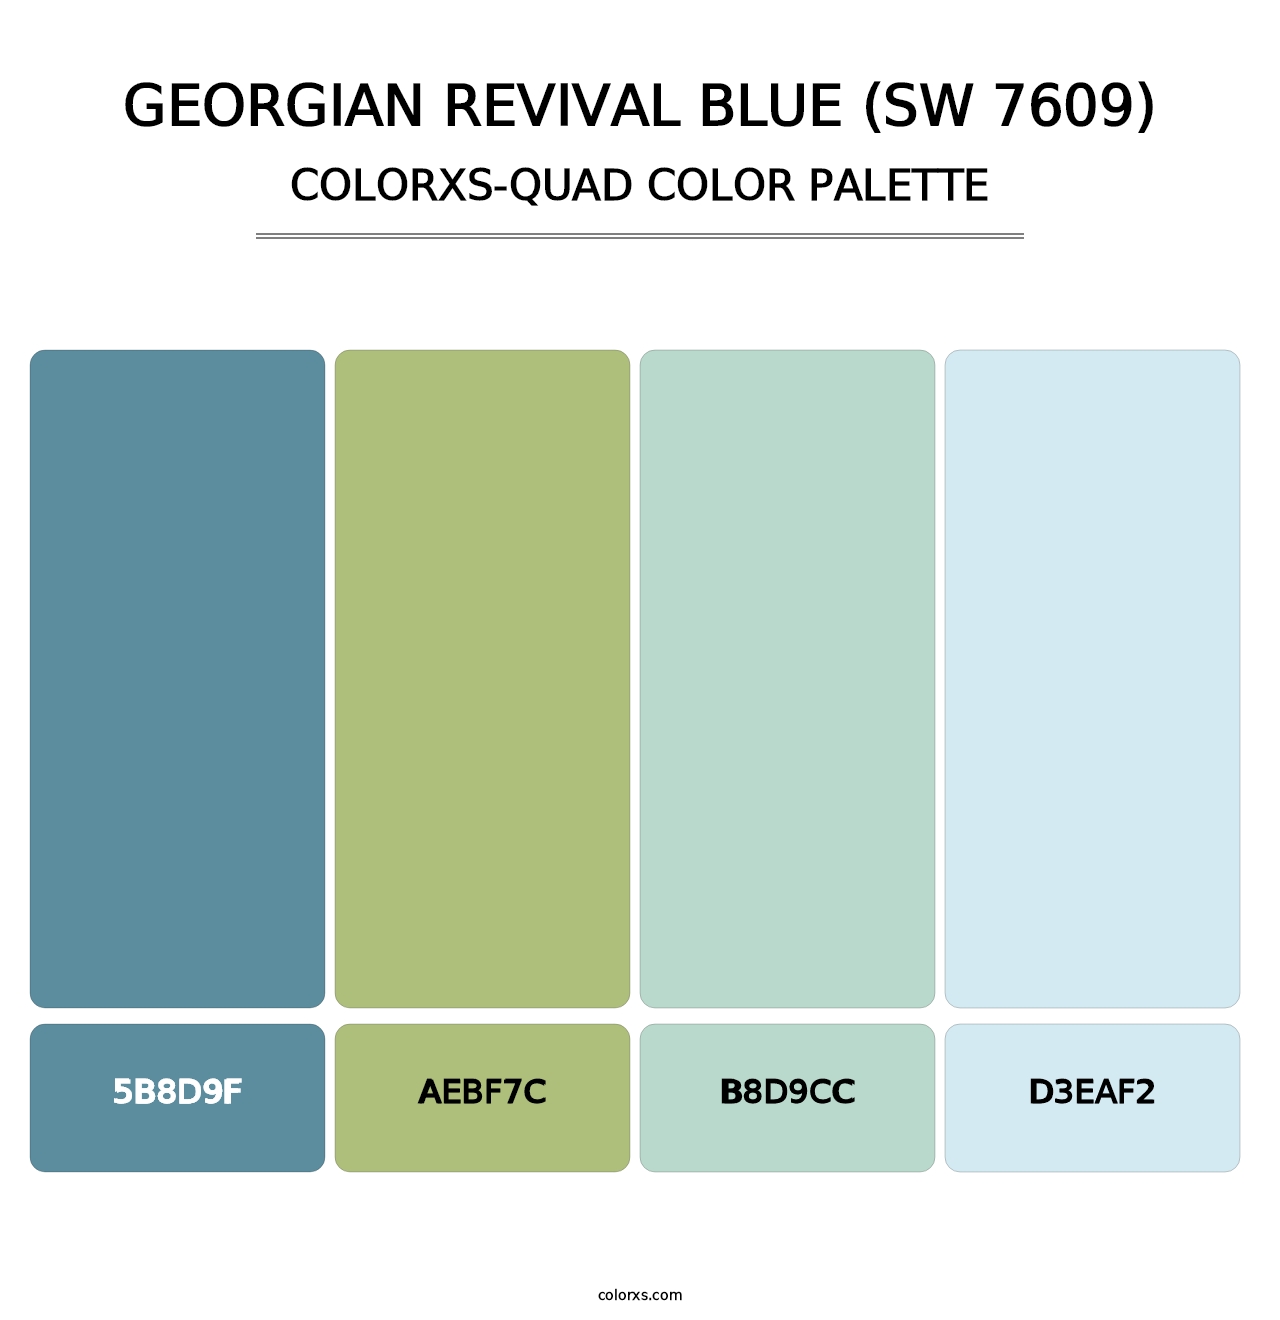 Georgian Revival Blue (SW 7609) - Colorxs Quad Palette